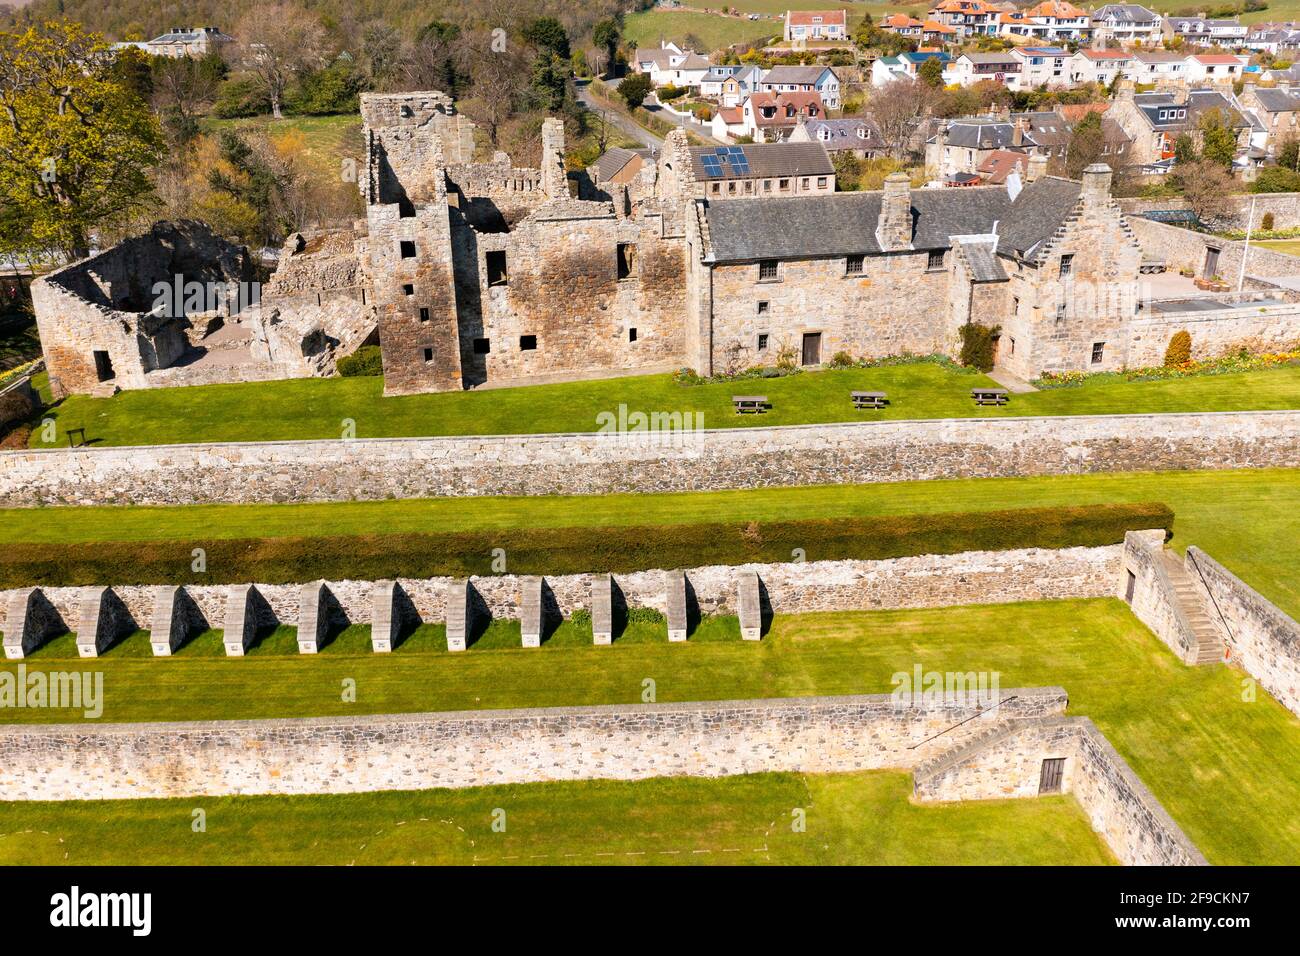 Vista aérea desde el drone del Castillo de Aberdour (cerrado durante el encierro) y los terrenos, Aberdour, Fife, Escocia, Reino Unido Foto de stock